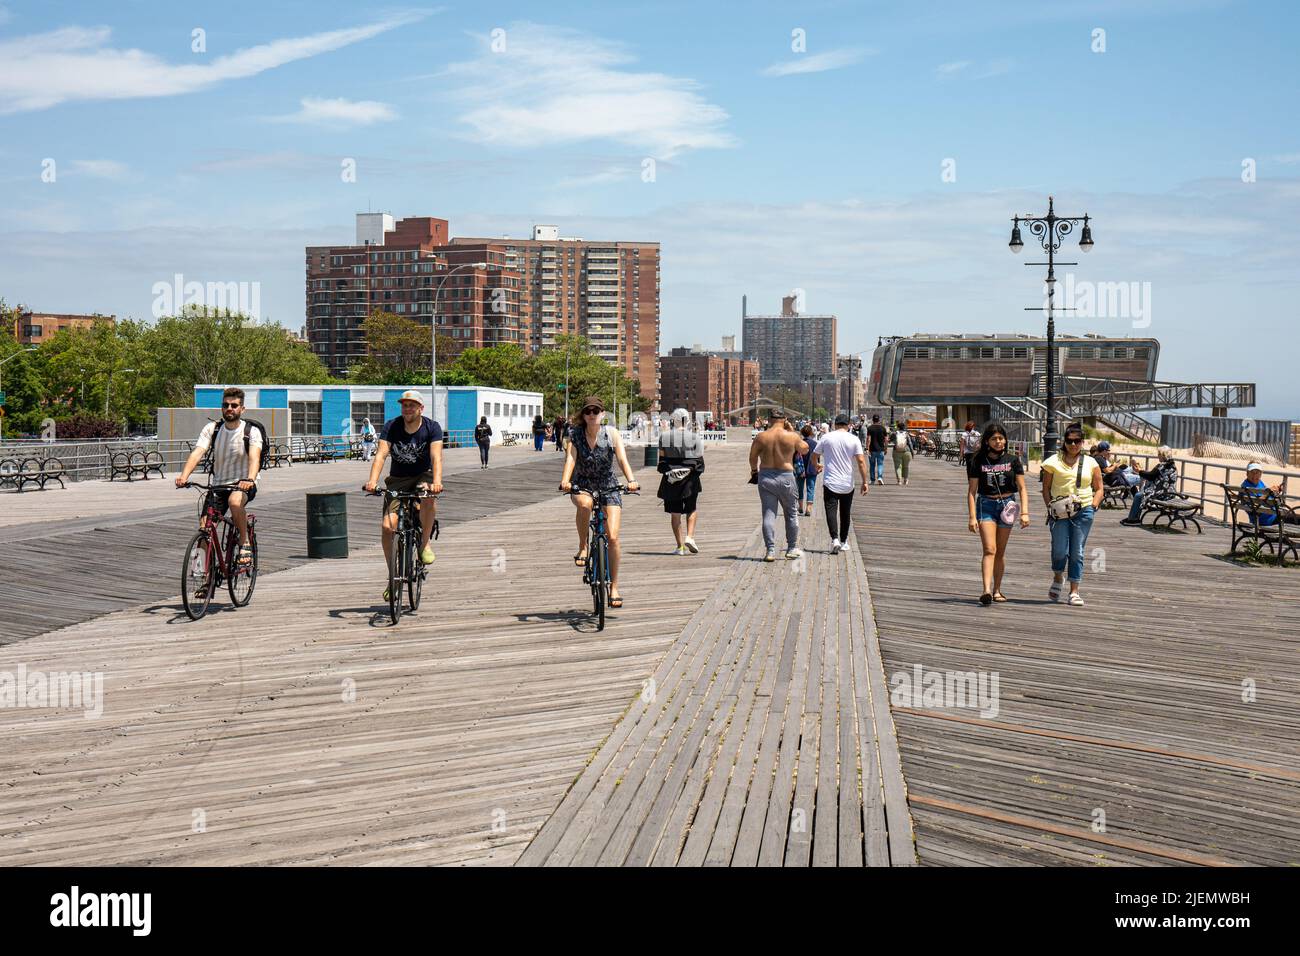 Menschen, die auf dem Riegelmann Boardwalk in Coney Island in Brooklyn, New York City, Vereinigte Staaten von Amerika, Rad fahren Stockfoto